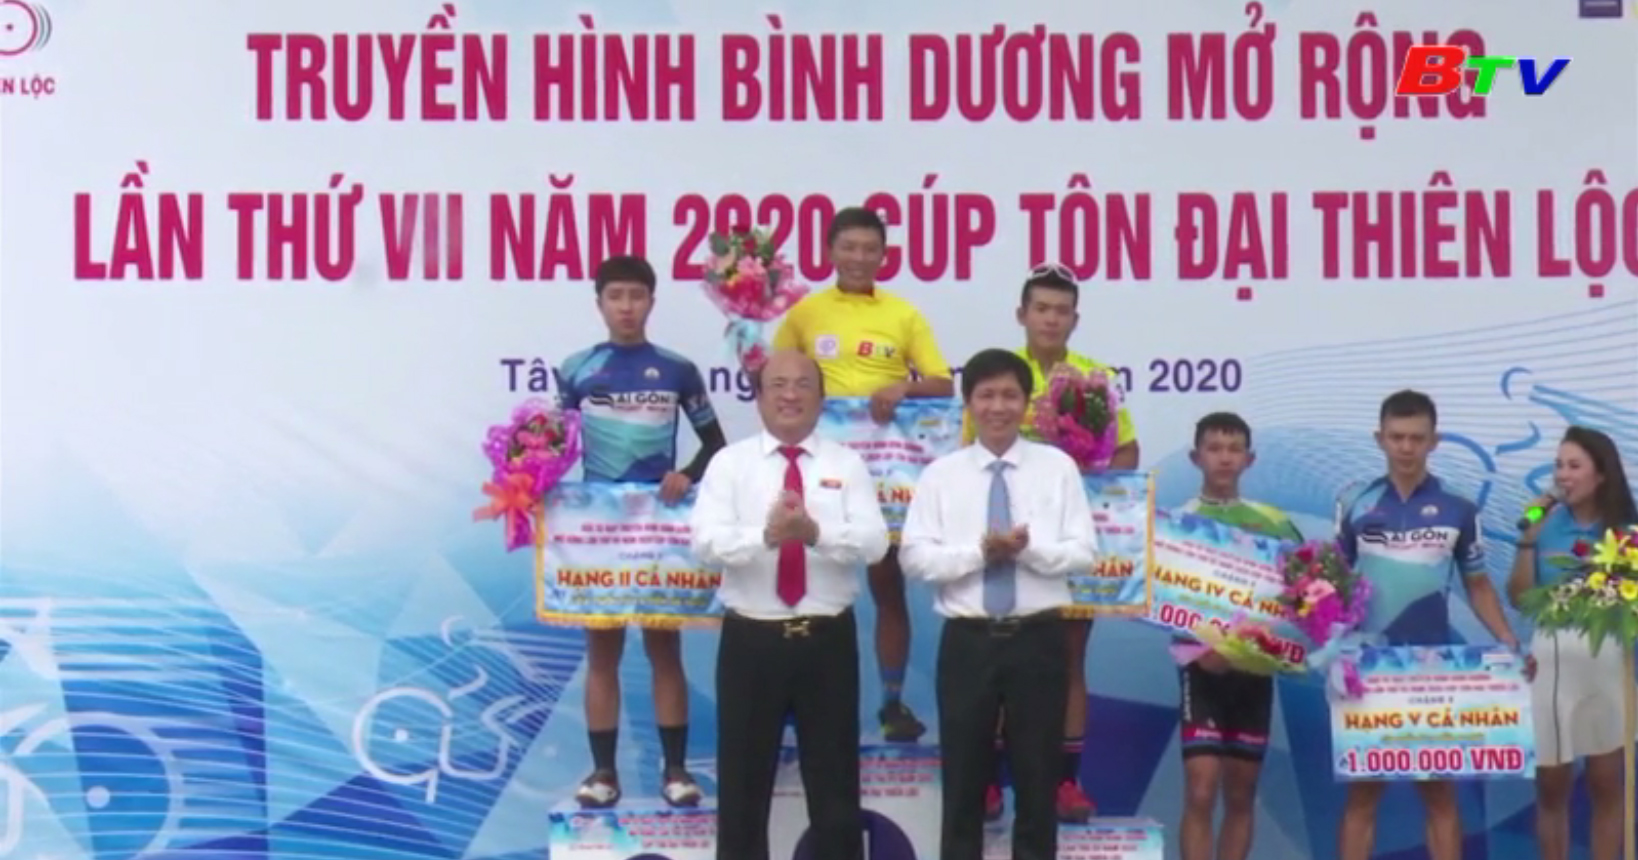 Kết quả Chặng 3 Giải Xe đạp Truyền hình Bình Dương mở rộng lần VII năm 2020 - Cúp Tôn Đại Thiên Lộc